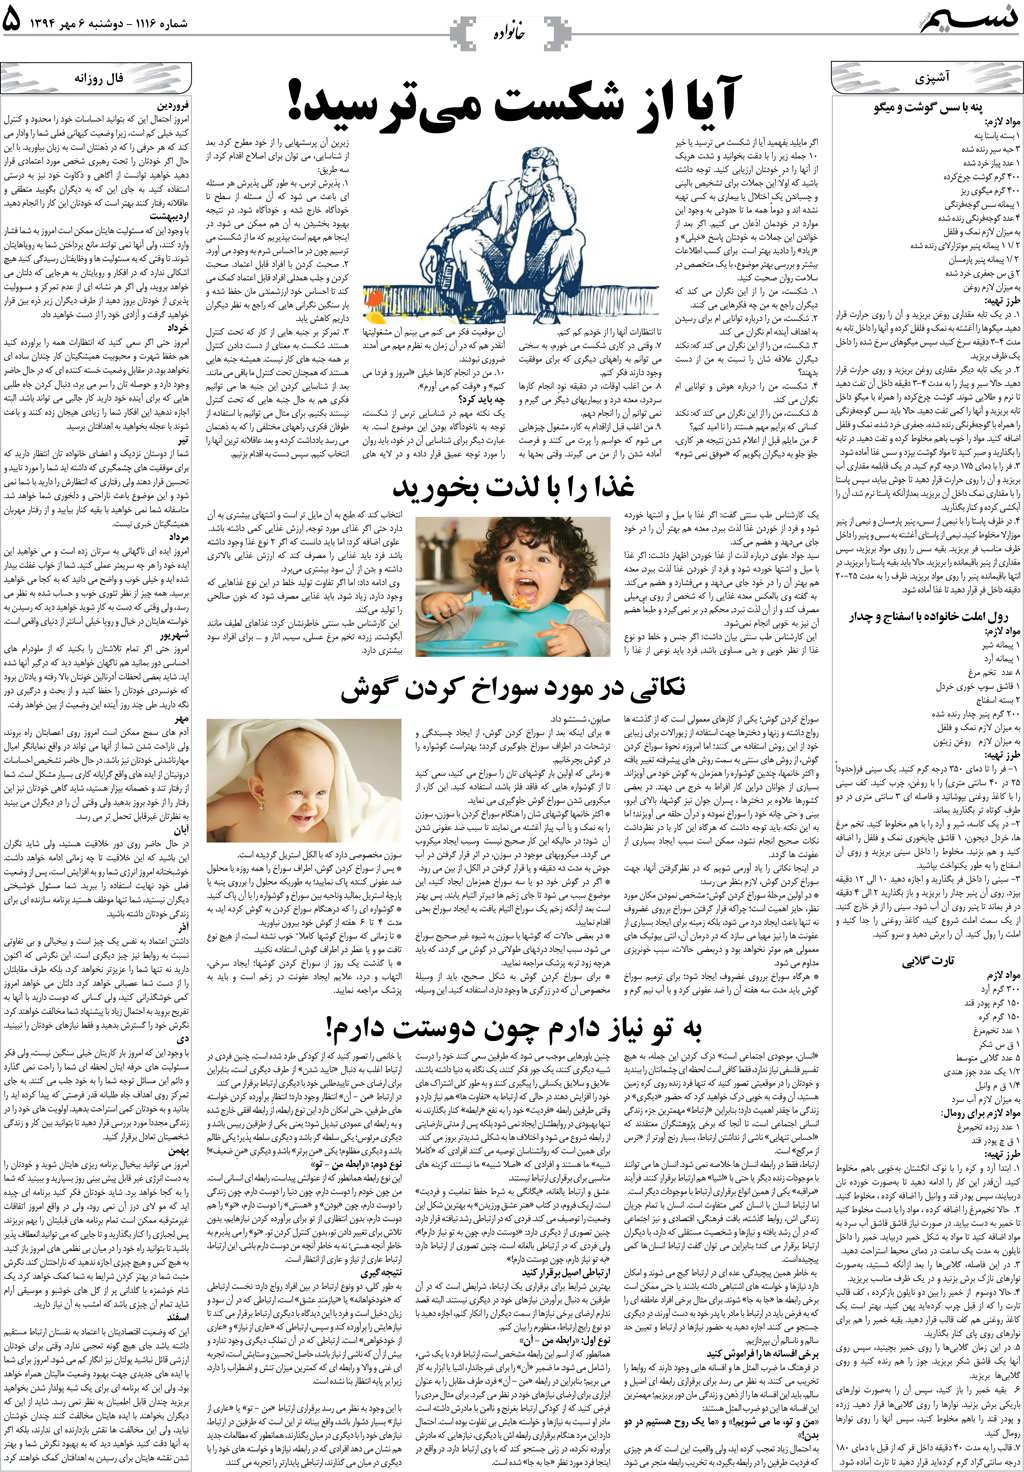 صفحه خانواده روزنامه نسیم شماره 1116